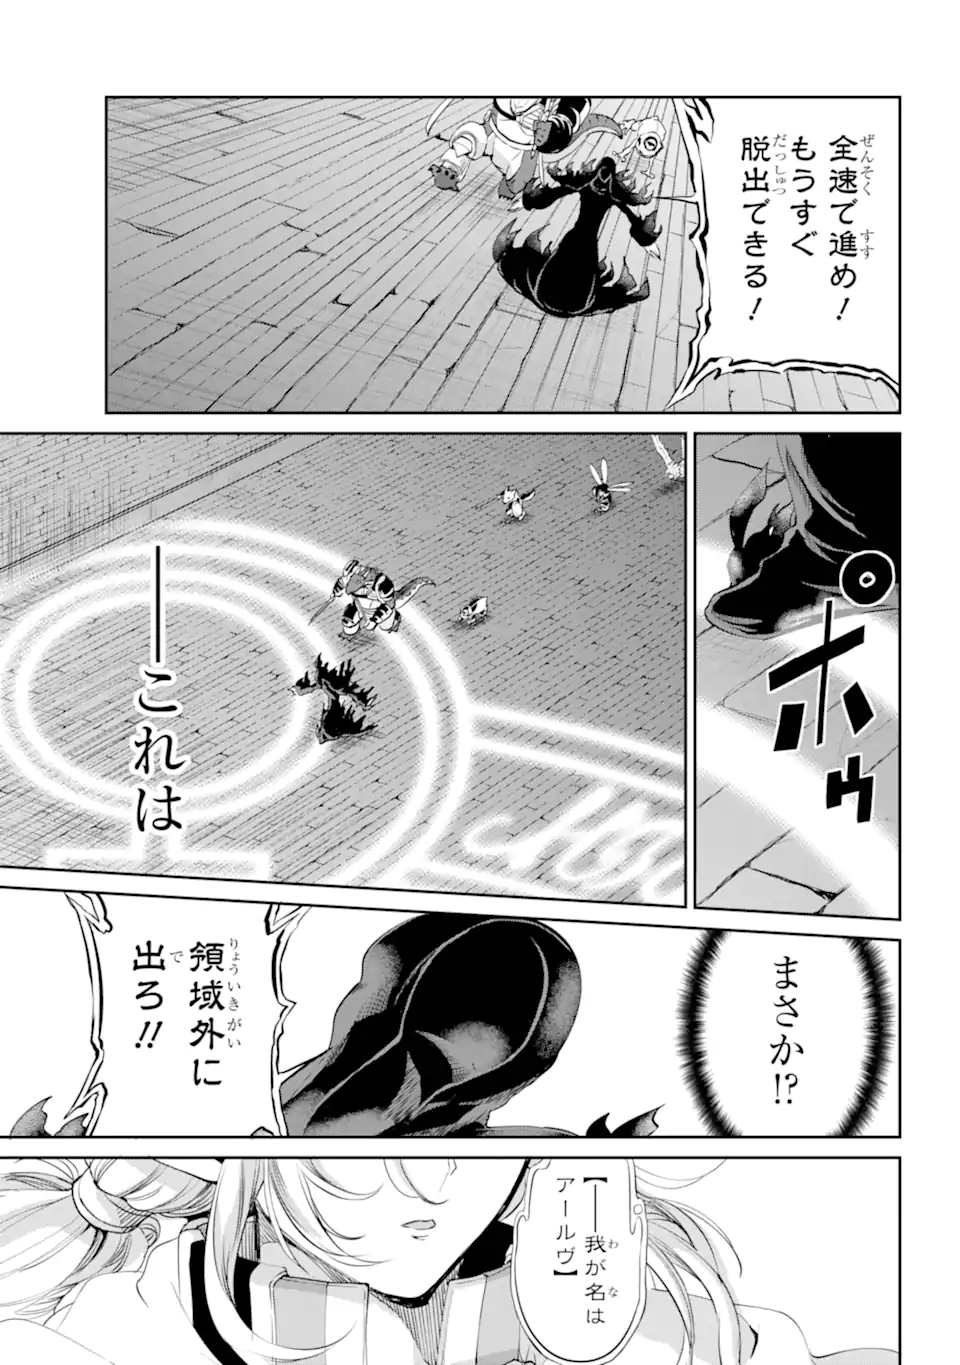 Dungeon ni Deai wo Motomeru no wa Machigatte Iru Darou ka Gaiden - Sword Oratoria - Chapter 92.3 - Page 3